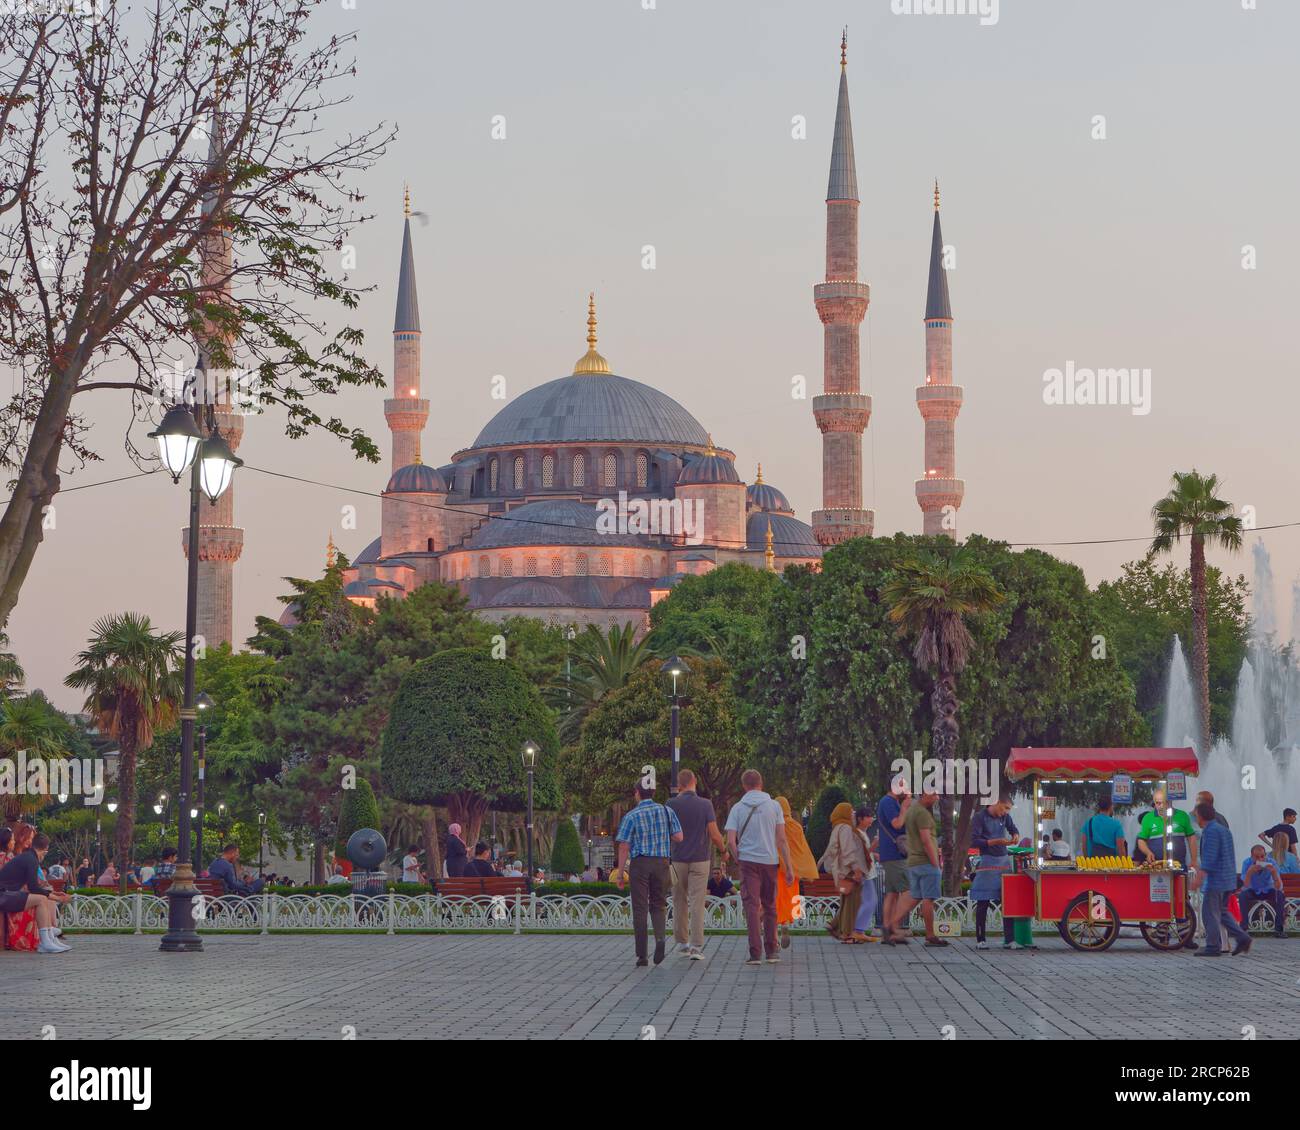 Soirée estivale avec la mosquée Sultan Ahmed aka Mosquée Bleue derrière les jardins, les touristes et une charrette rouge vendant cor. Istanbul, Turquie Banque D'Images